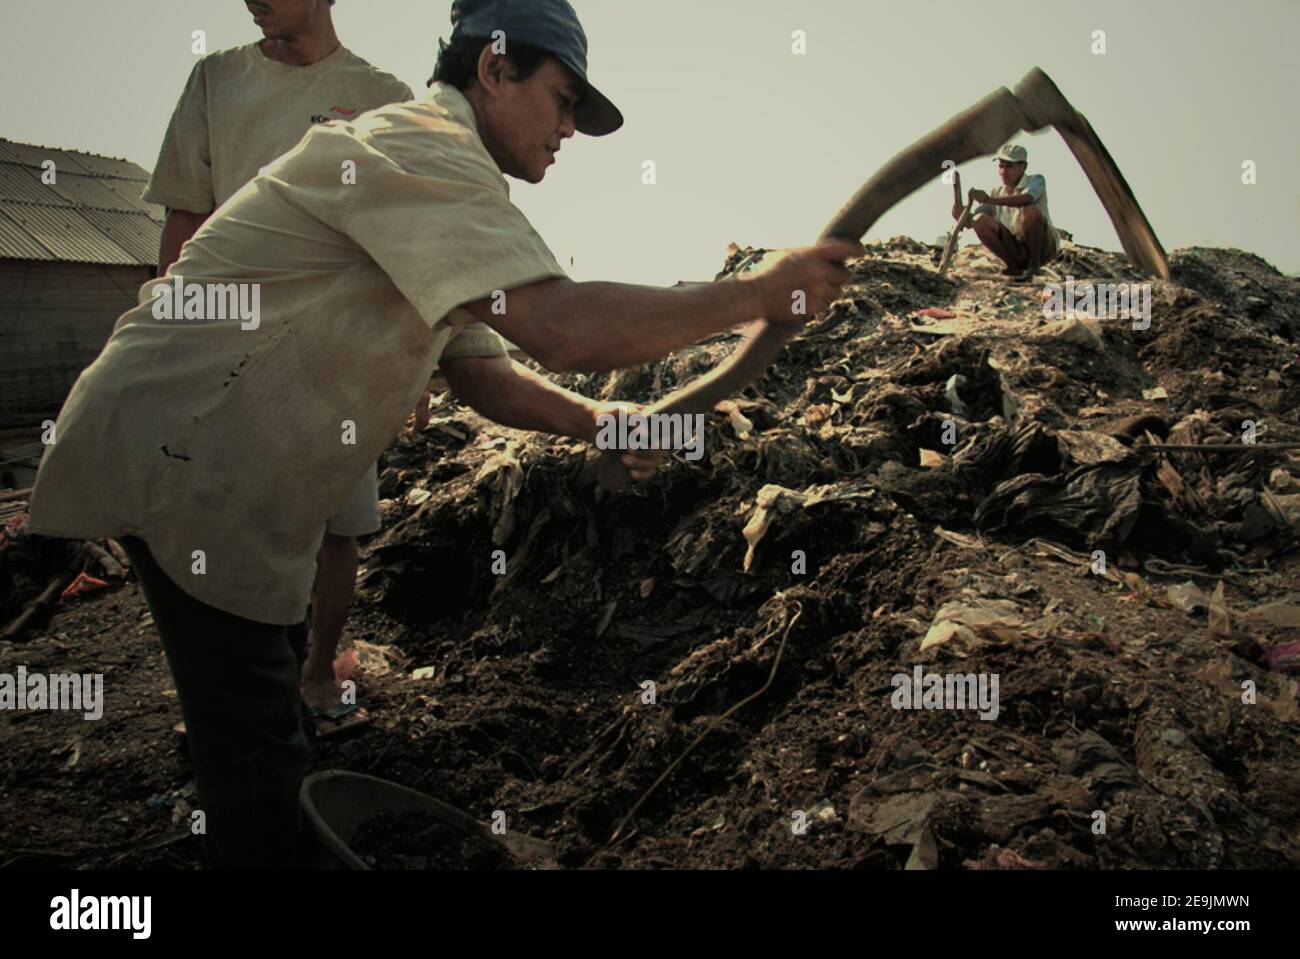 Les hommes qui prennent des matériaux d'un site de décharge de revitalisation de la rivière, pour être utilisés dans la remise en état des terres sur leur environnement de maison. Cilincing, Nord de Jakarta, Jakarta, Indonésie. Banque D'Images